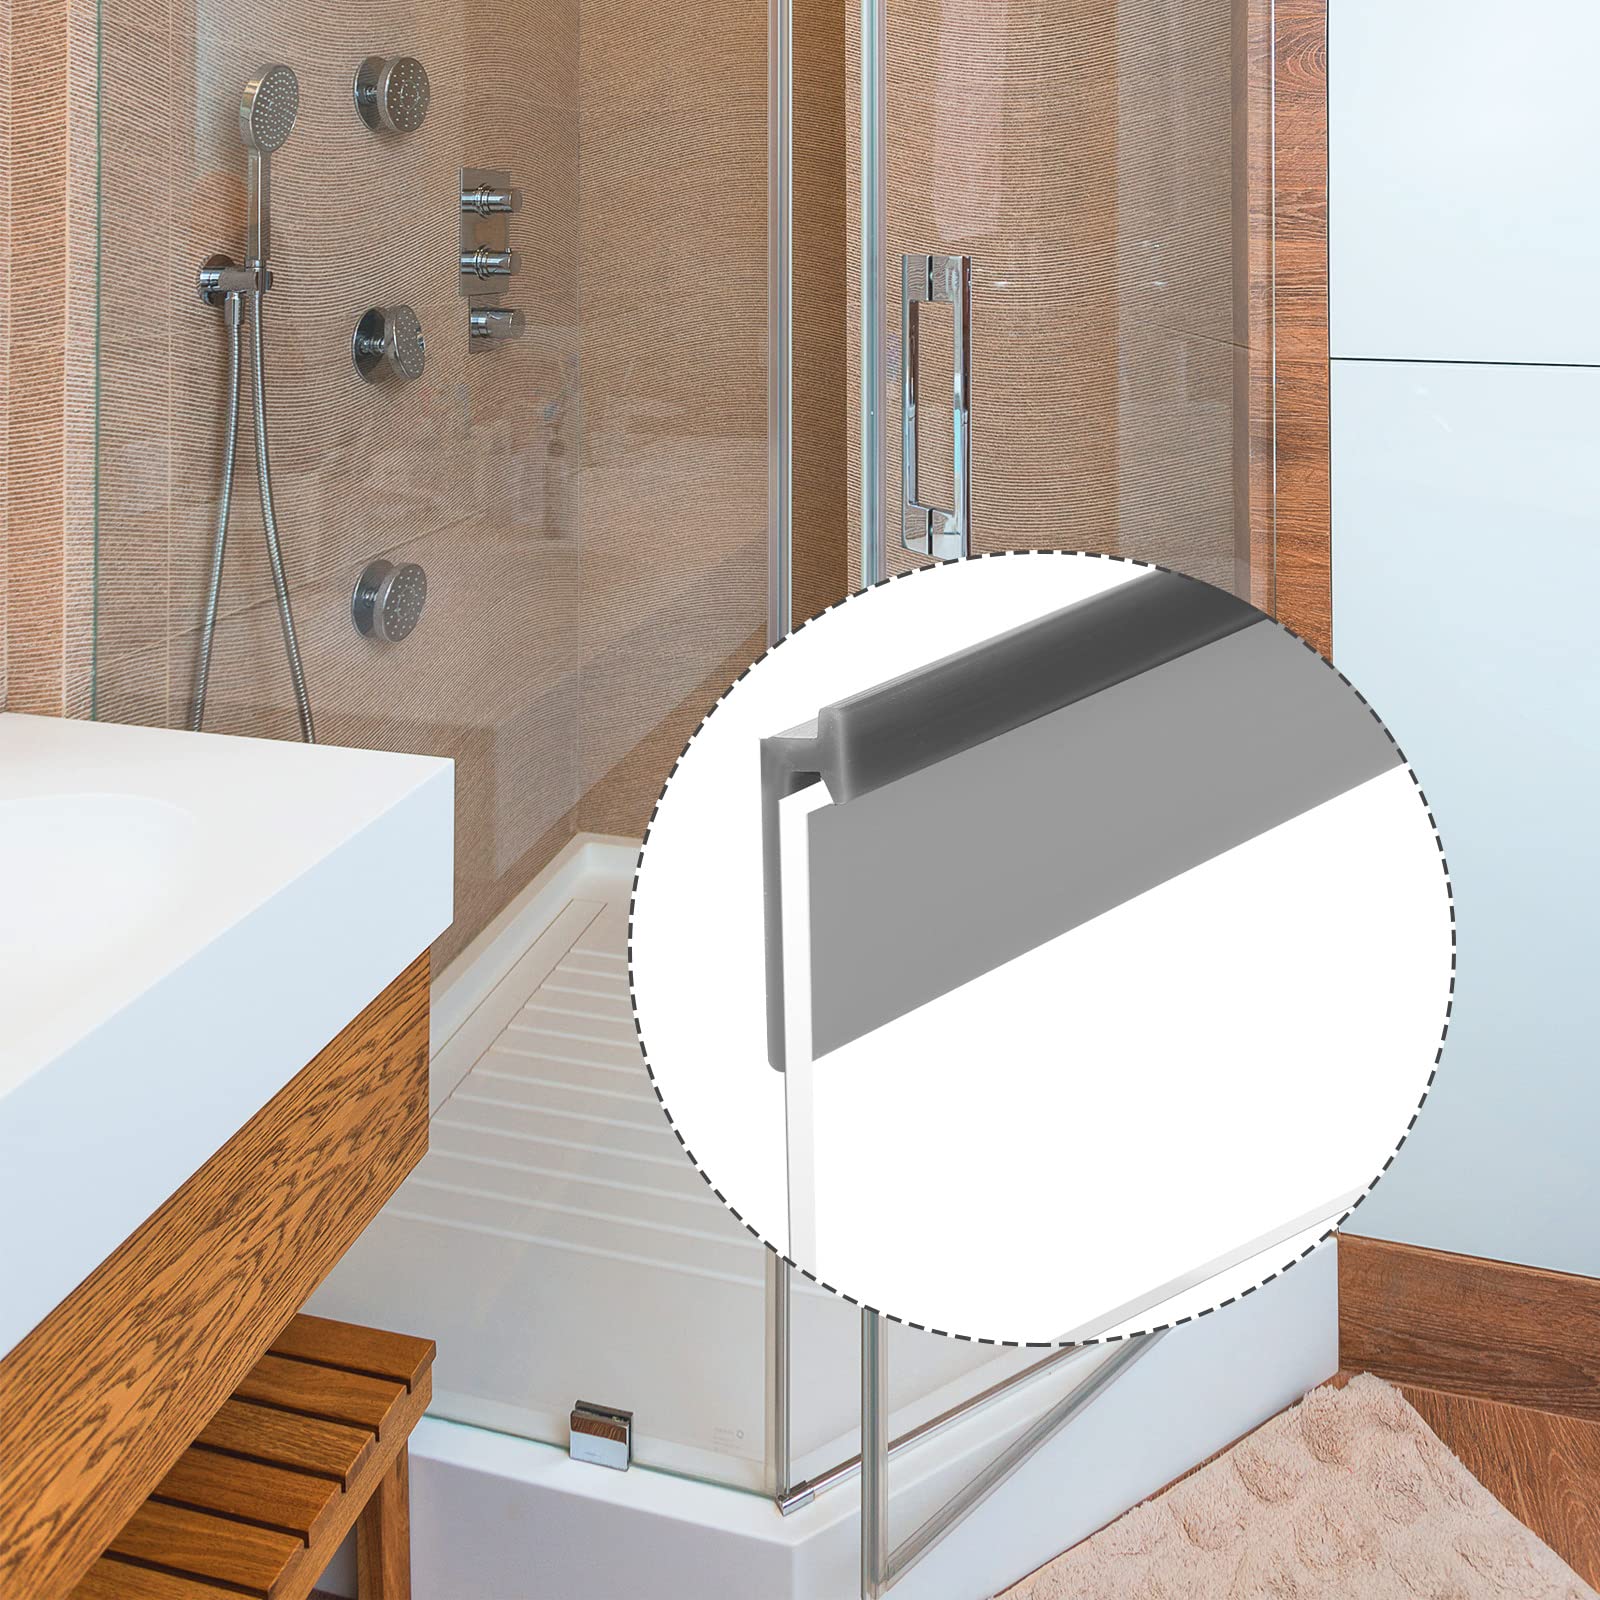 2 Rolls Frameless Shower Door Bottom Seal 36 Inch Gray Silicone Shower Door Side Seal Strip Under Door Sweep Bottom Replacement Seal for Home Bathroom